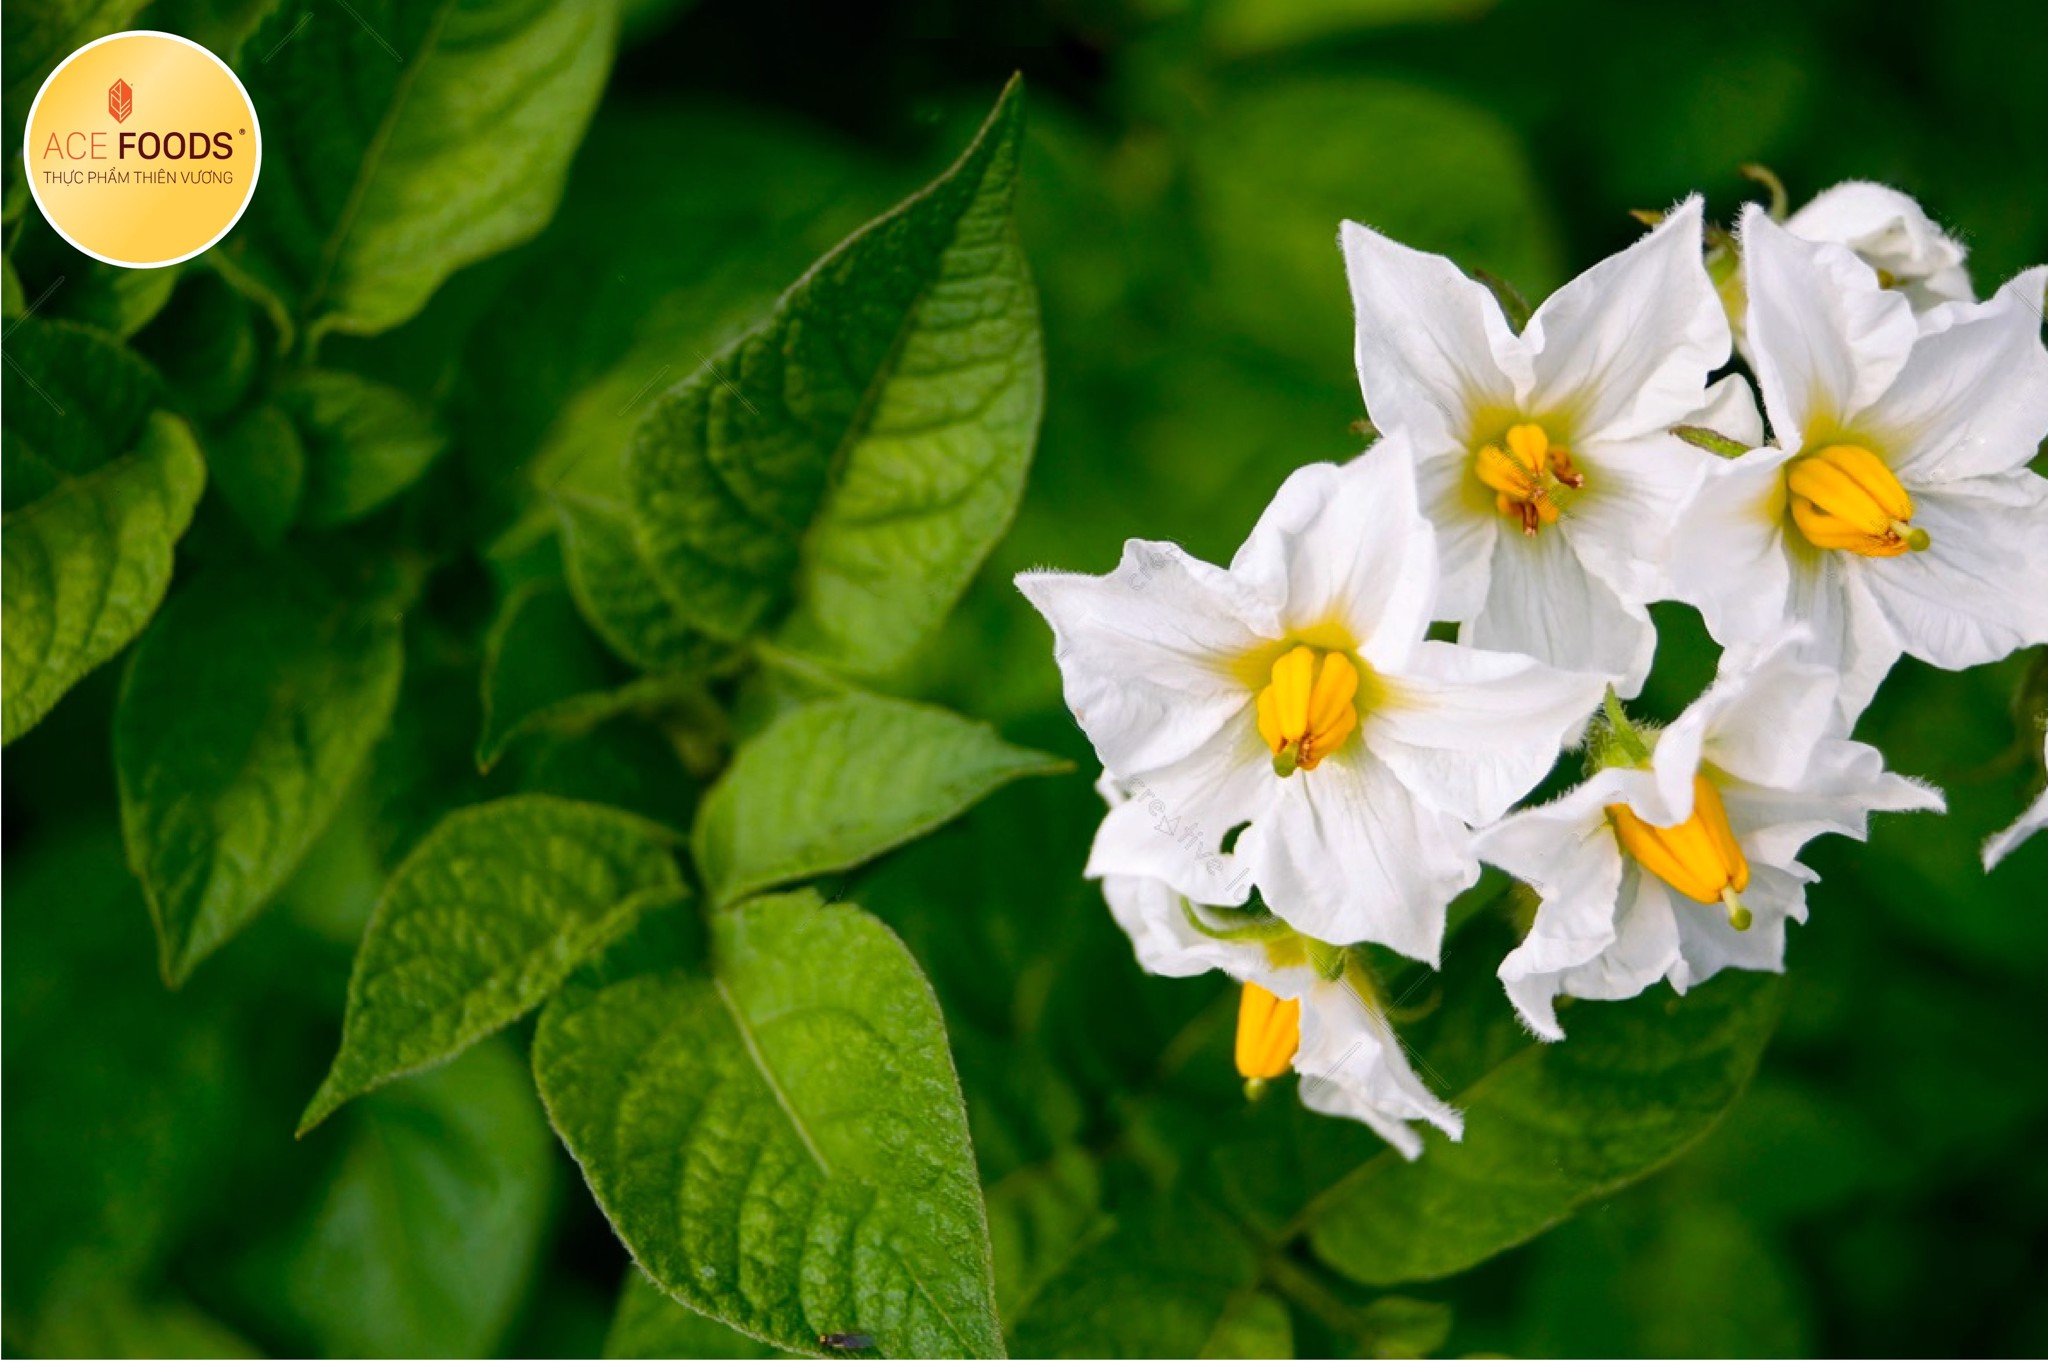 Cây 'Bintje' có kích thước trung bình và thẳng đứng, với thân cây tía, lá màu xanh đậm và hoa trắng